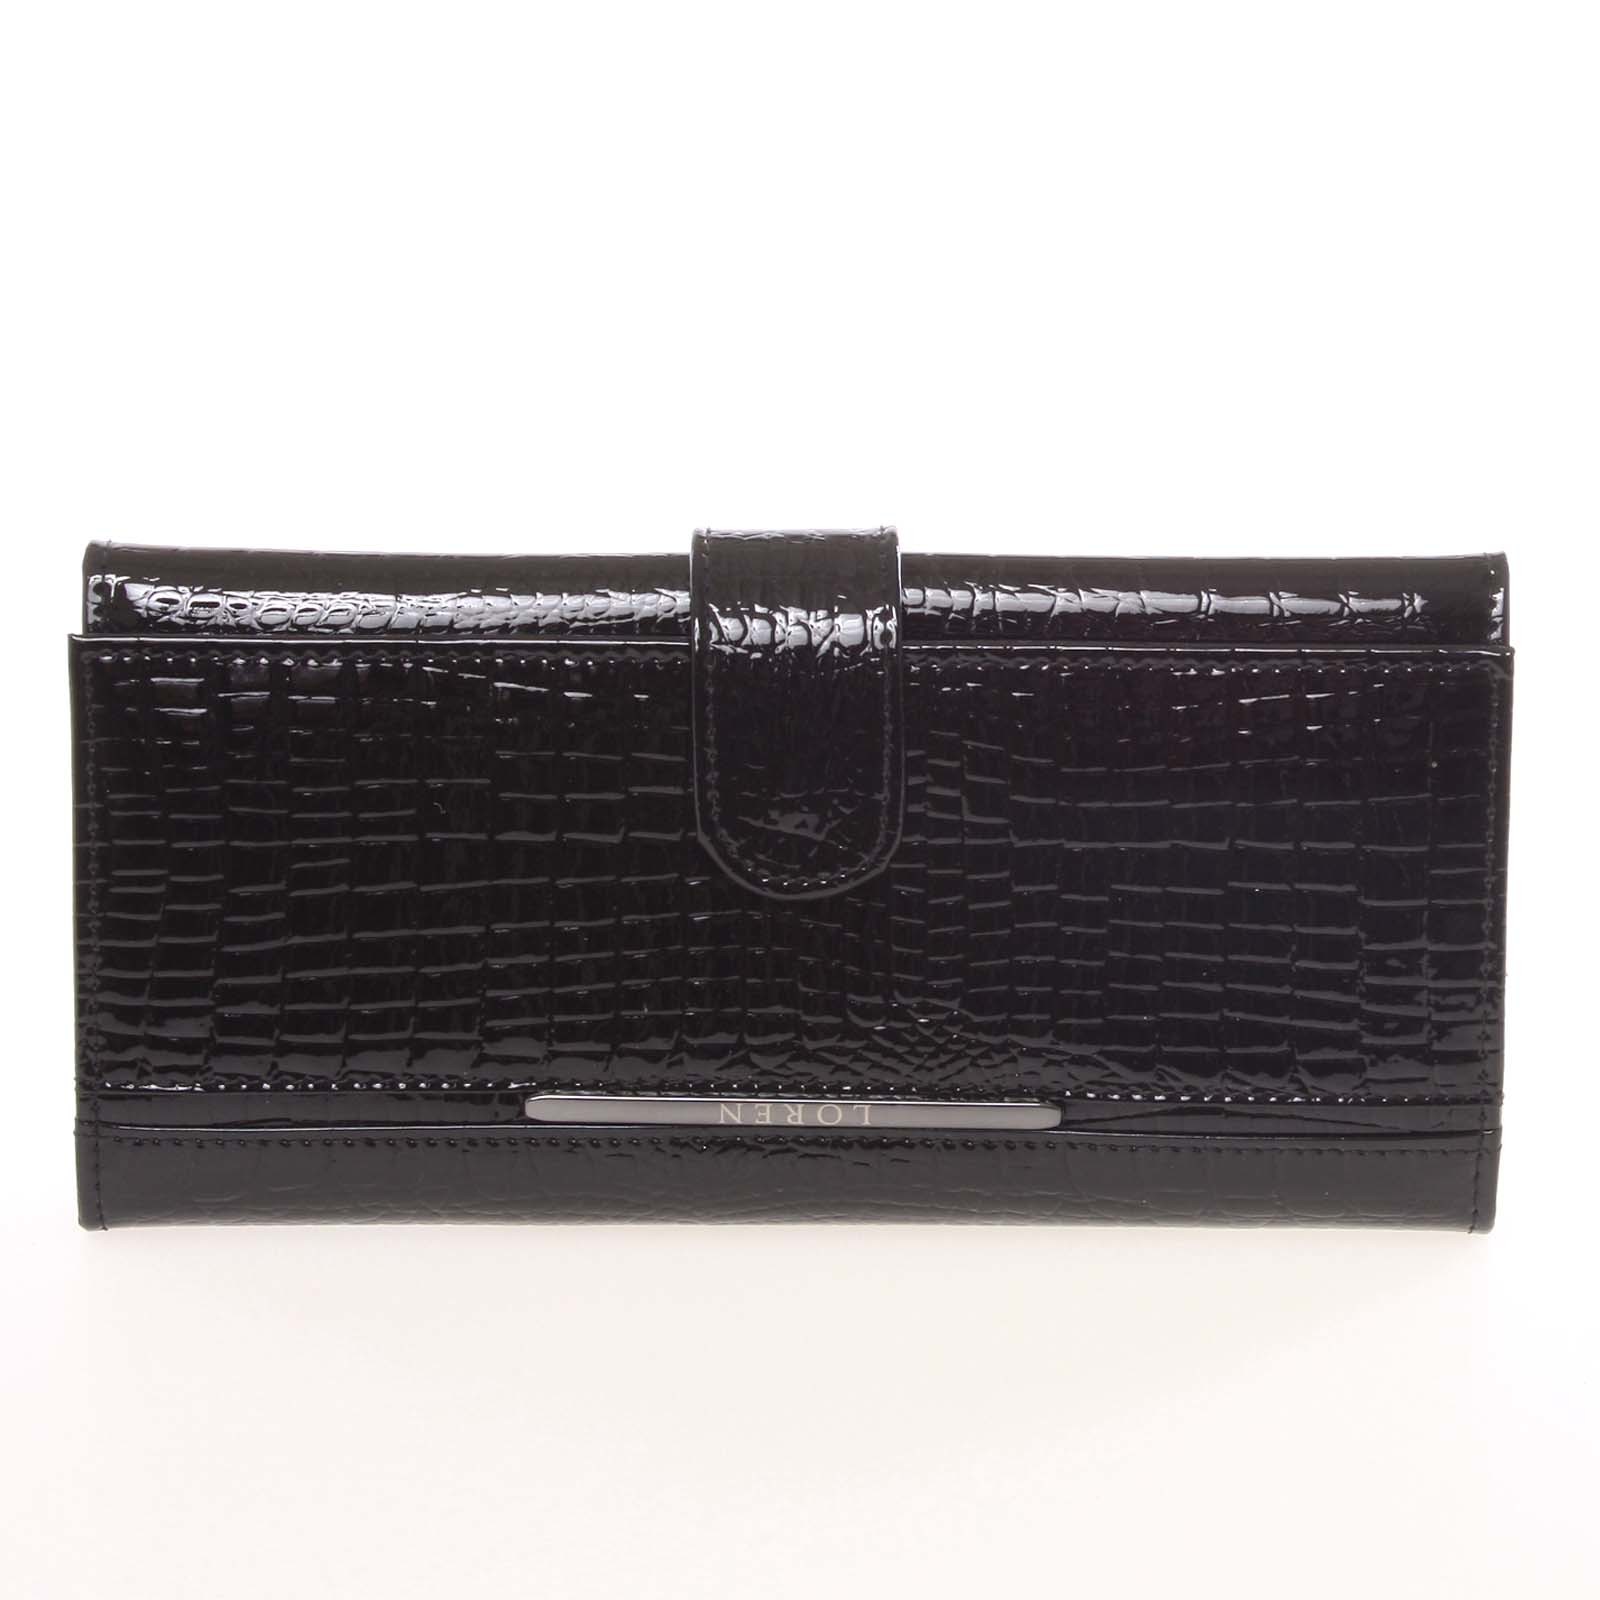 Dámská kožená peněženka černá - Loren Aness černá